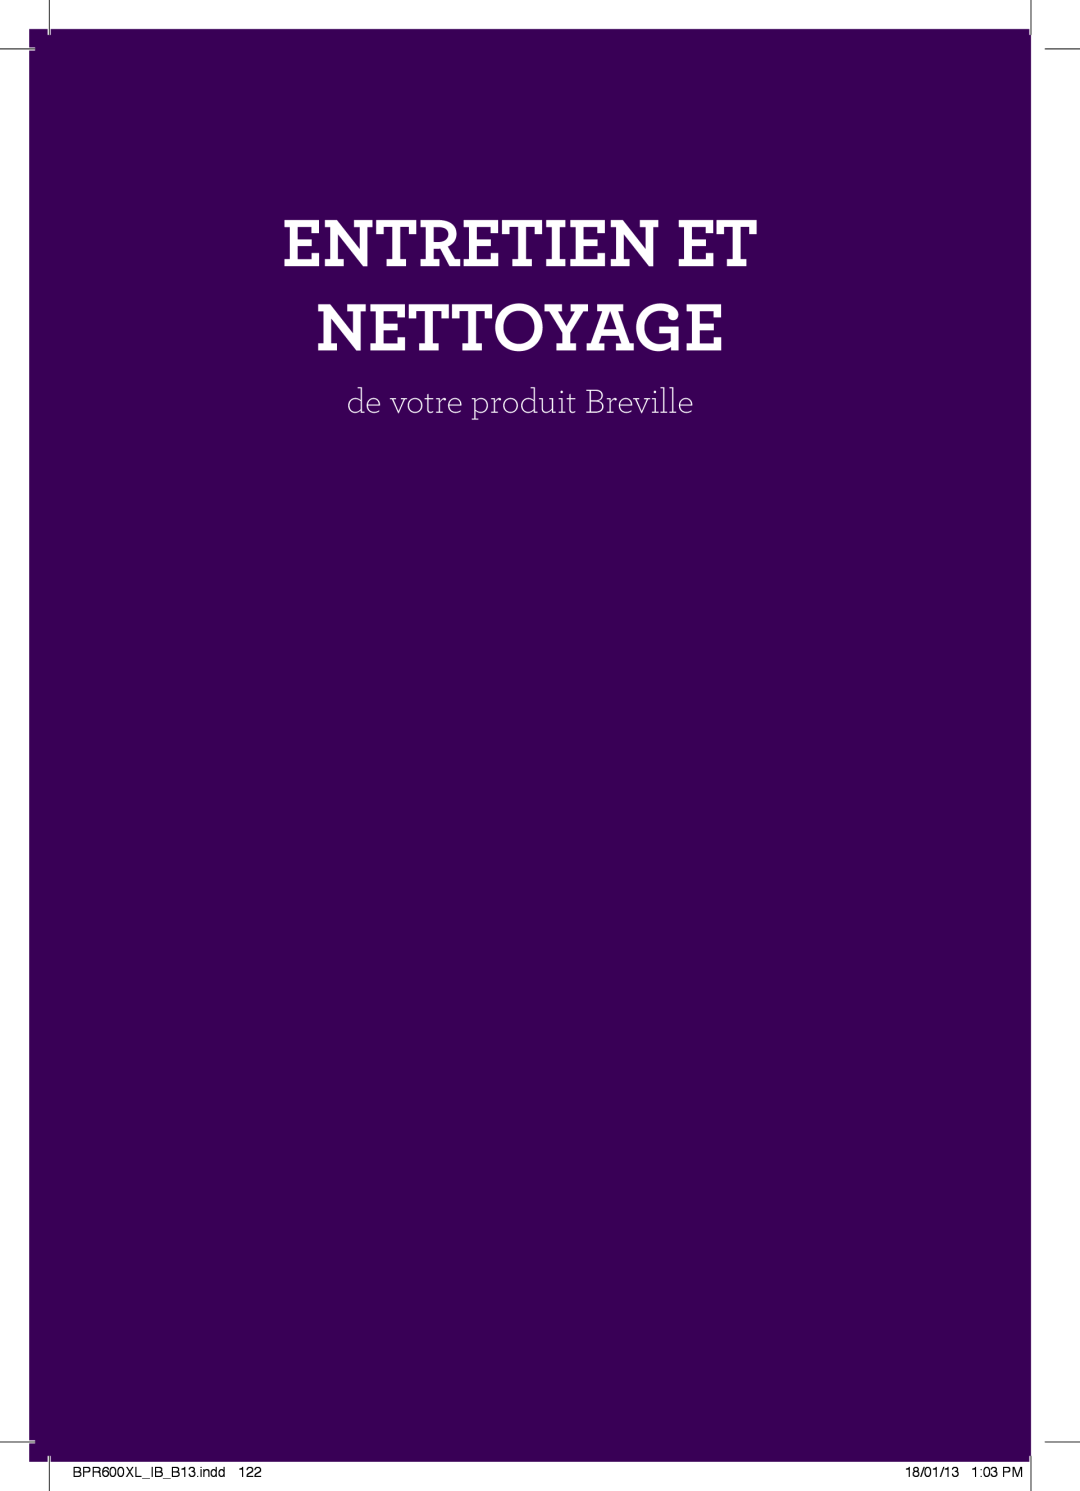 Breville manual Entretien Et Nettoyage, de votre produit Breville, BPR600XLIBB13.indd, 18/01/13 103 PM 